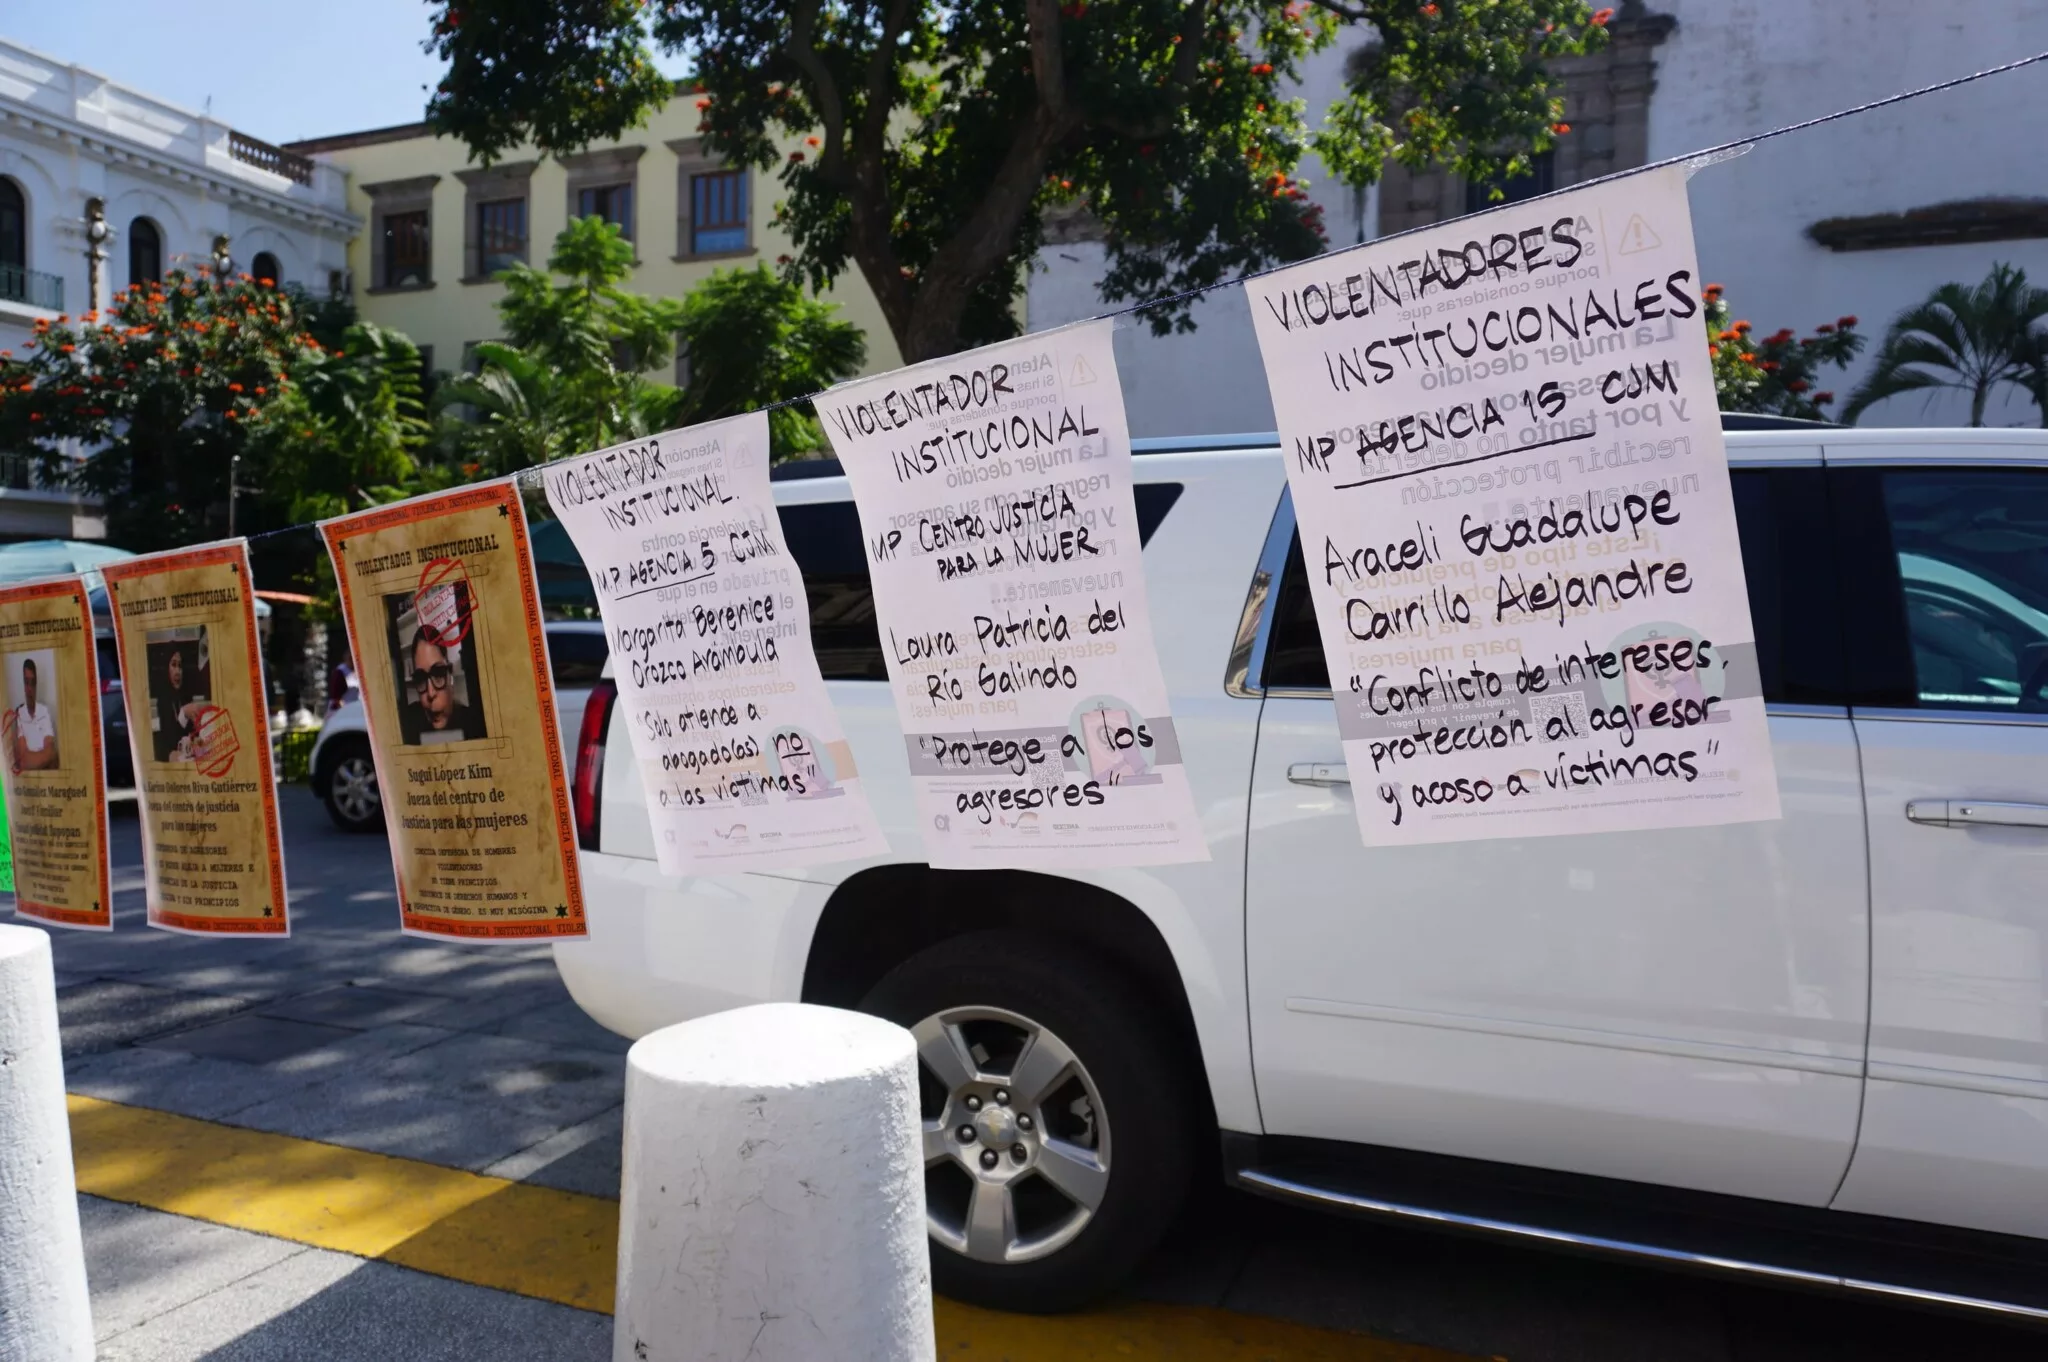 Con un rebozo simbólico y un tendedero de violentadores institucionales accionan contra la violencia vicaria en Jalisco